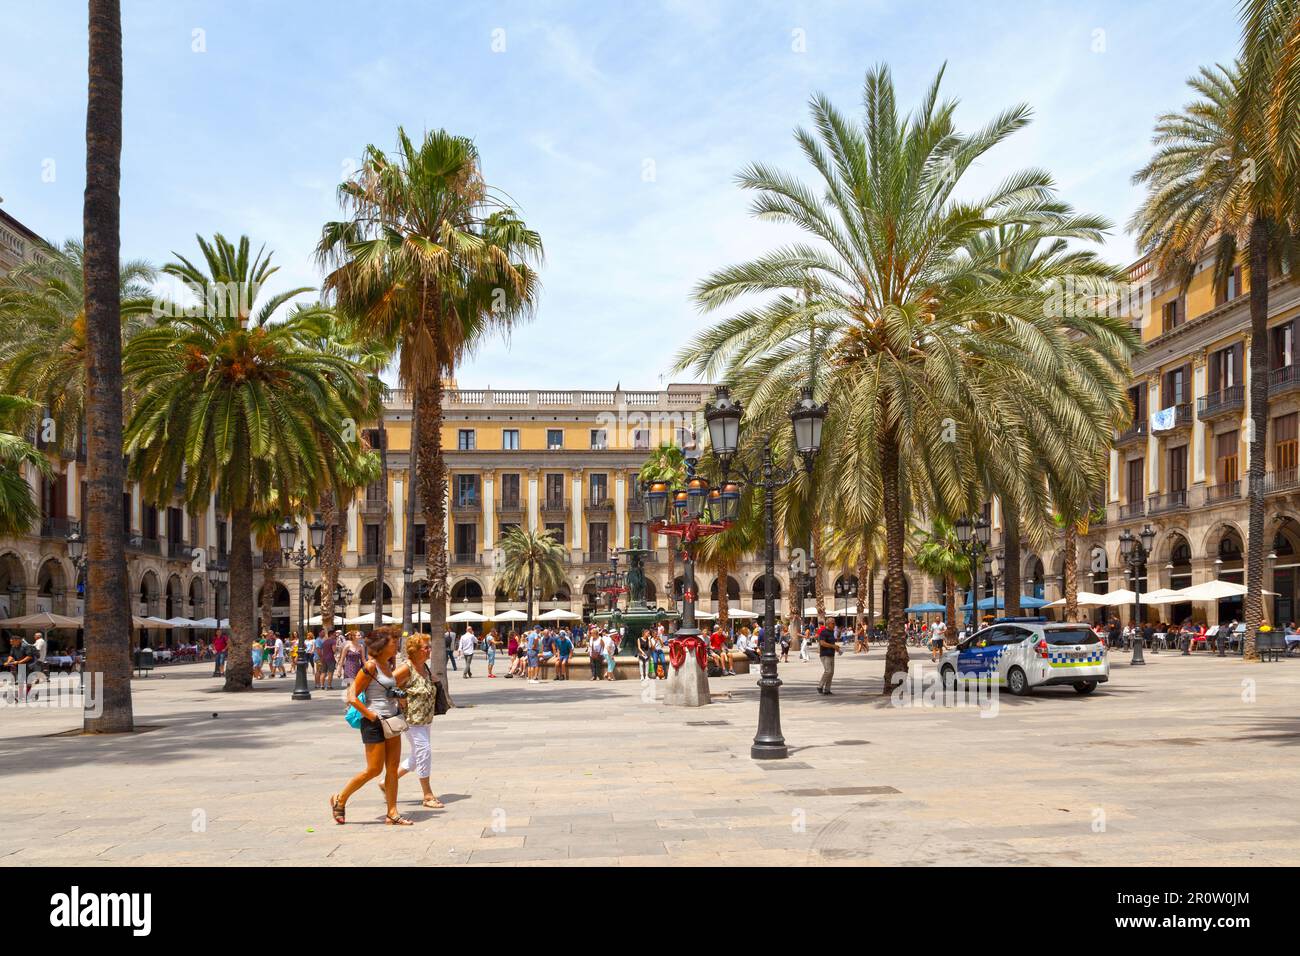 Barcelone, Espagne - 08 juin 2018: La fontaine des trois Grâces (Catalan: Font des Tres Gràcies) est située sur la Plaza Real de Barcelone, dans le Th Banque D'Images